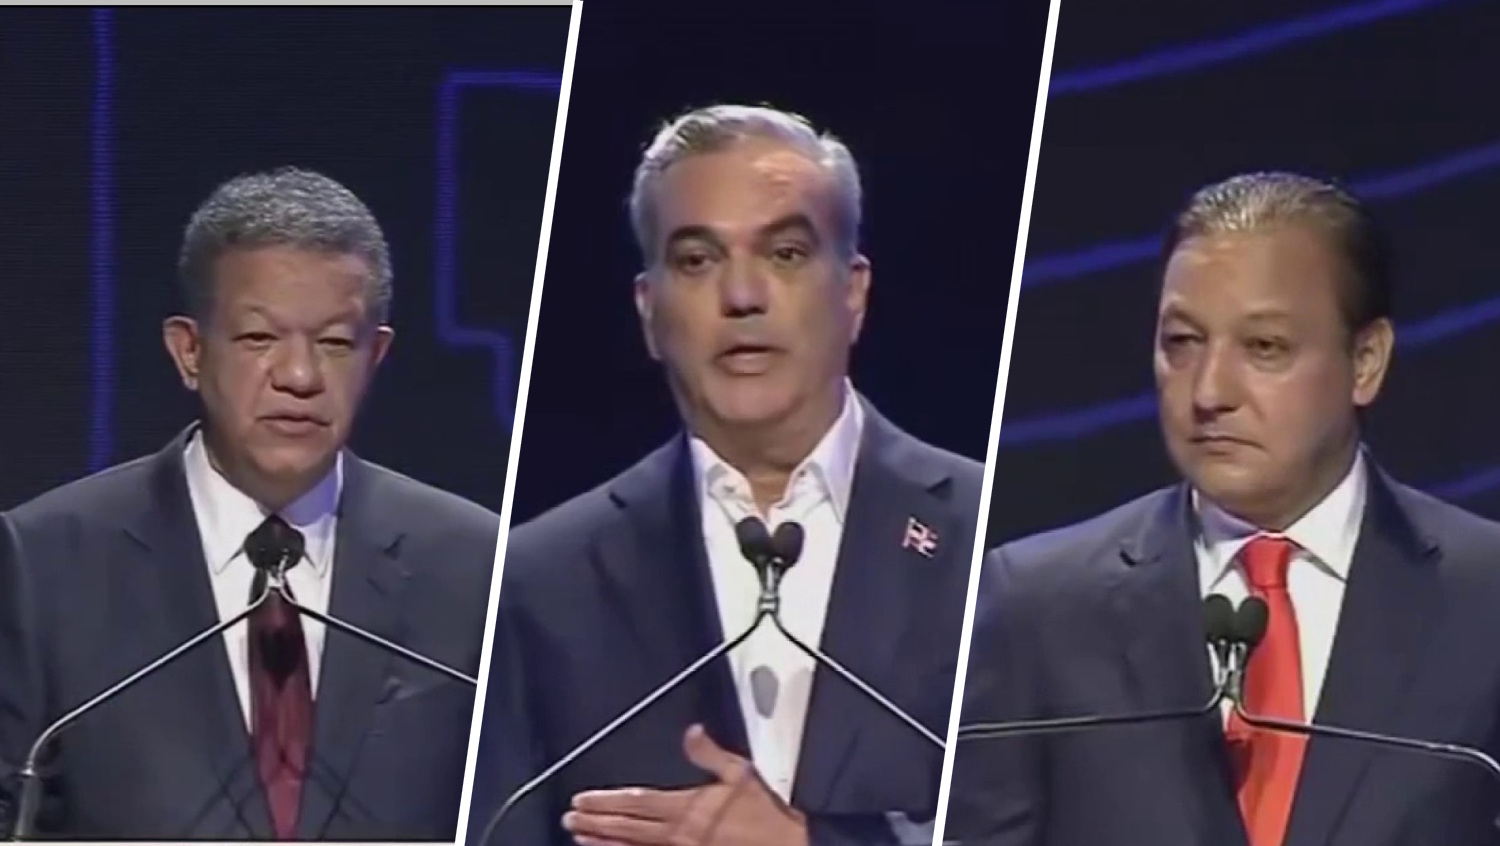 República Dominicana realiza debate presidencial entre Abinader, Fernández y Martínez